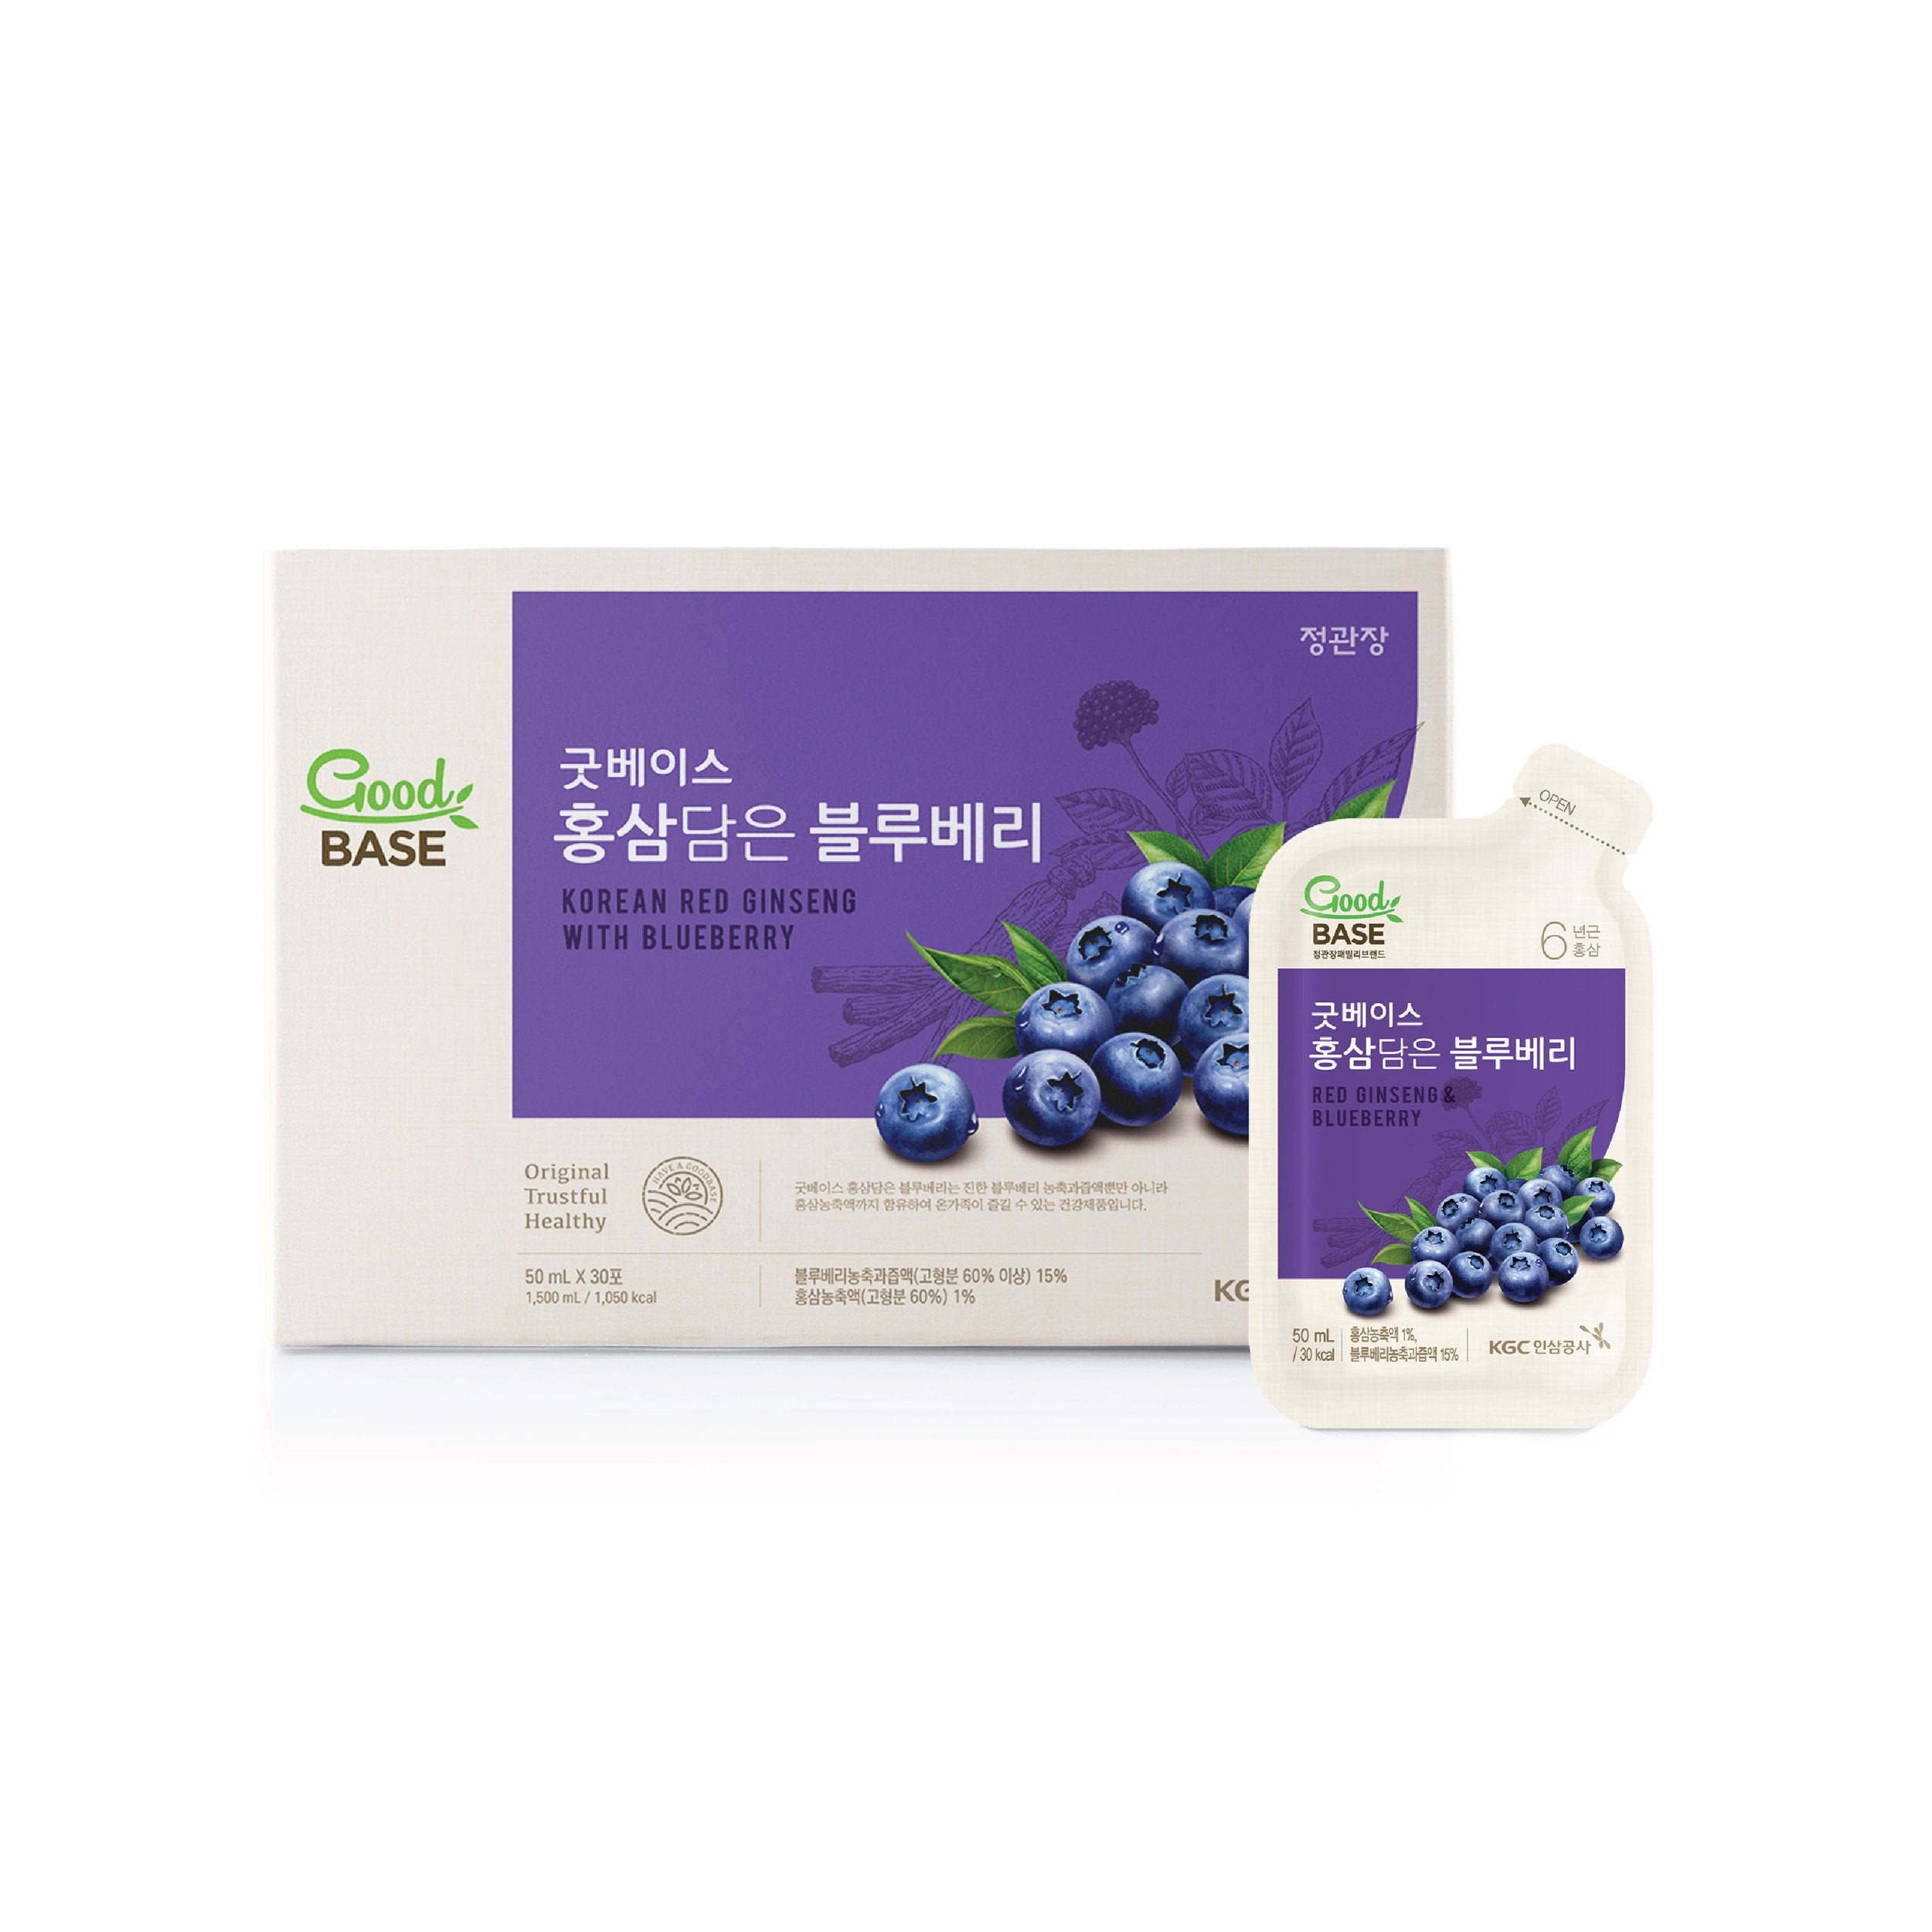 Good Base Red Ginseng & Blueberry - Một hỗn hợp mạnh mẽ